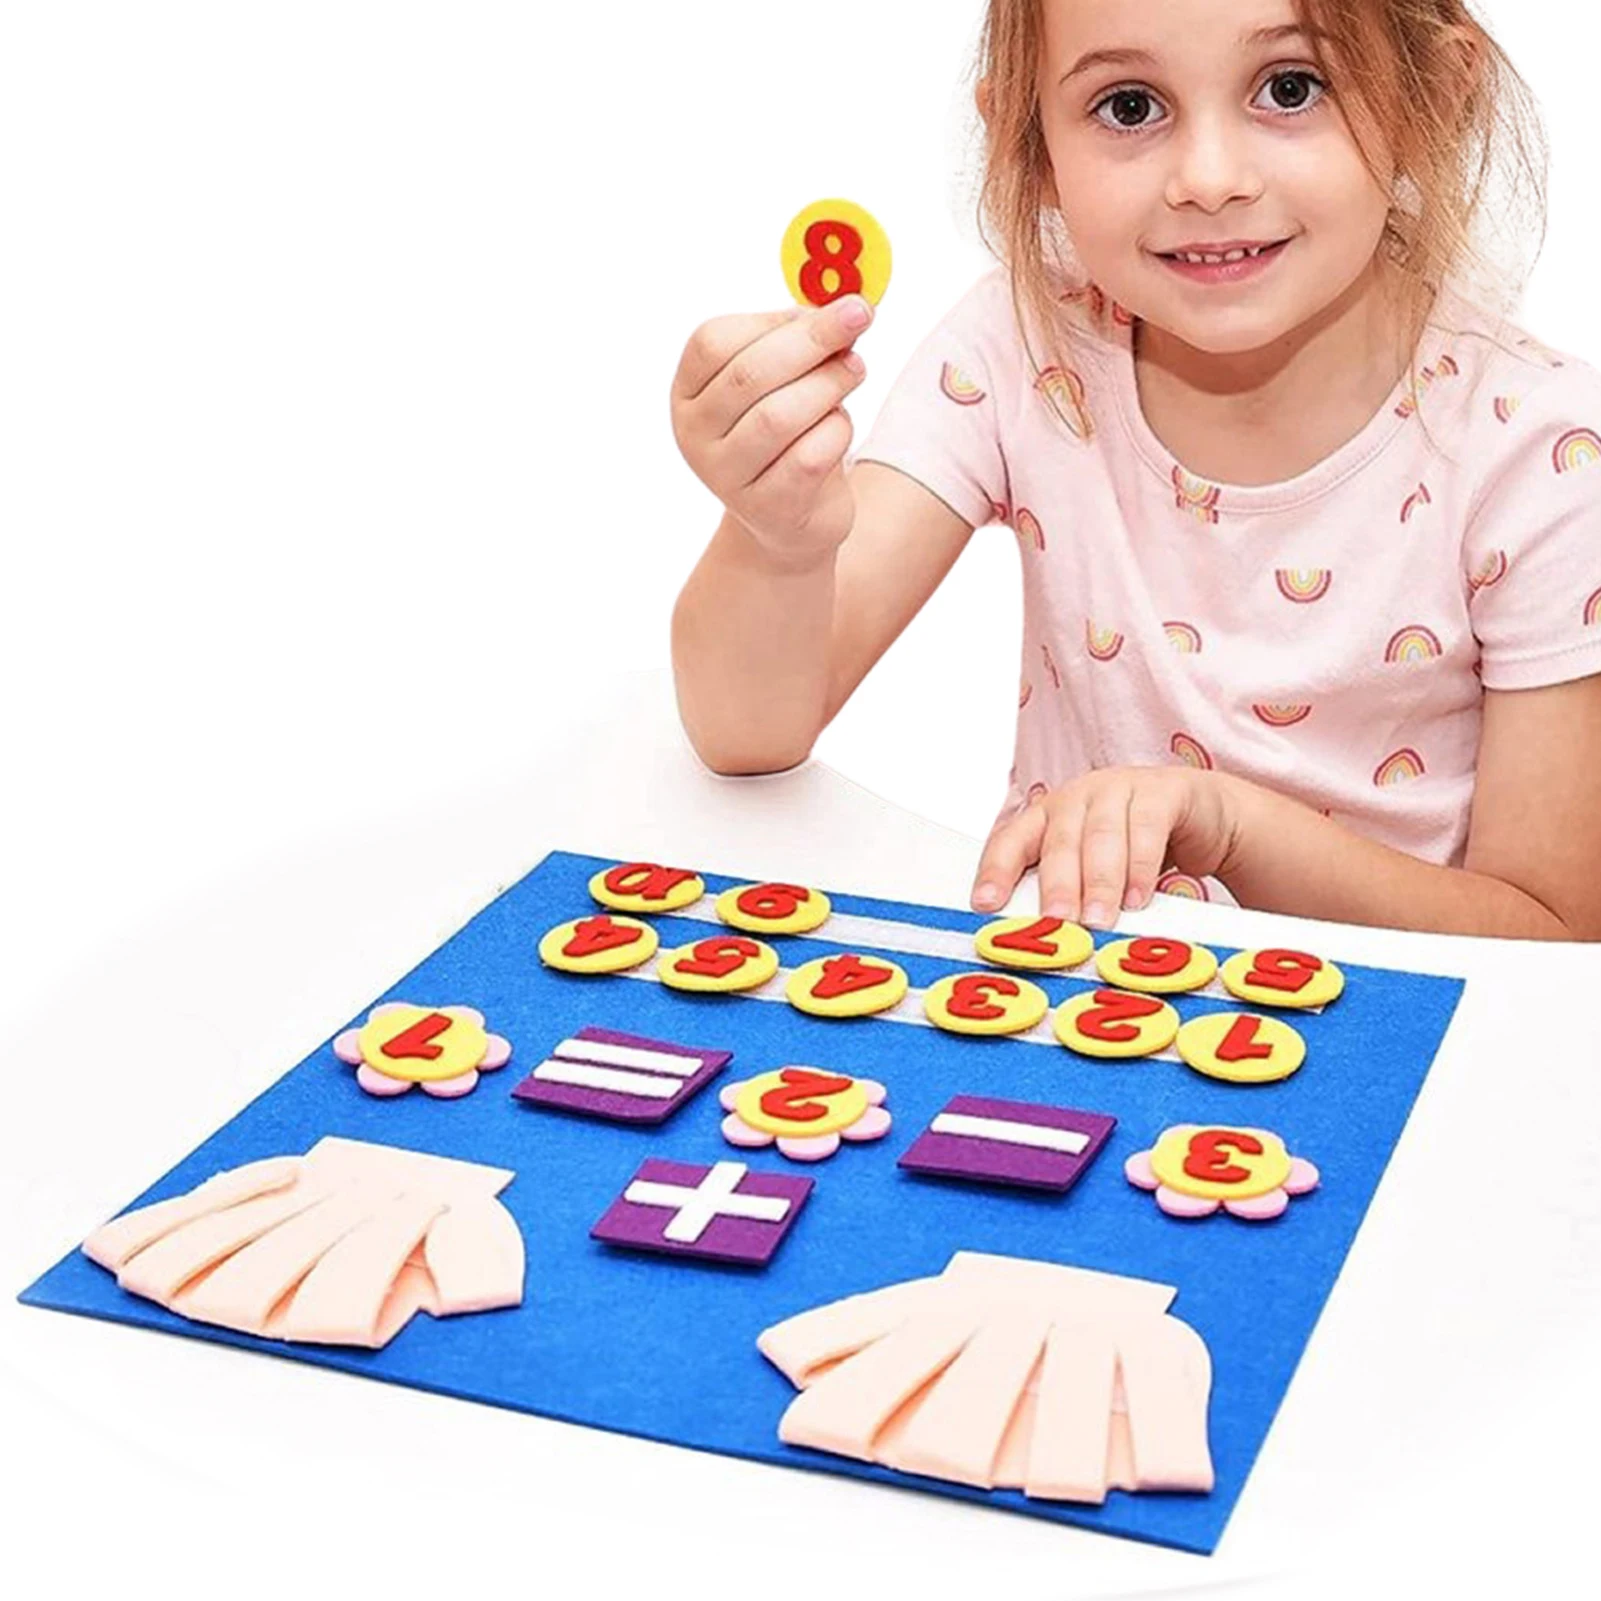 

Войлочная доска, игрушка для подсчета чисел пальцев, войлочная доска, подсчет чисел, игрушка для детского сада, цифры, Подсчетные игрушки, обучение